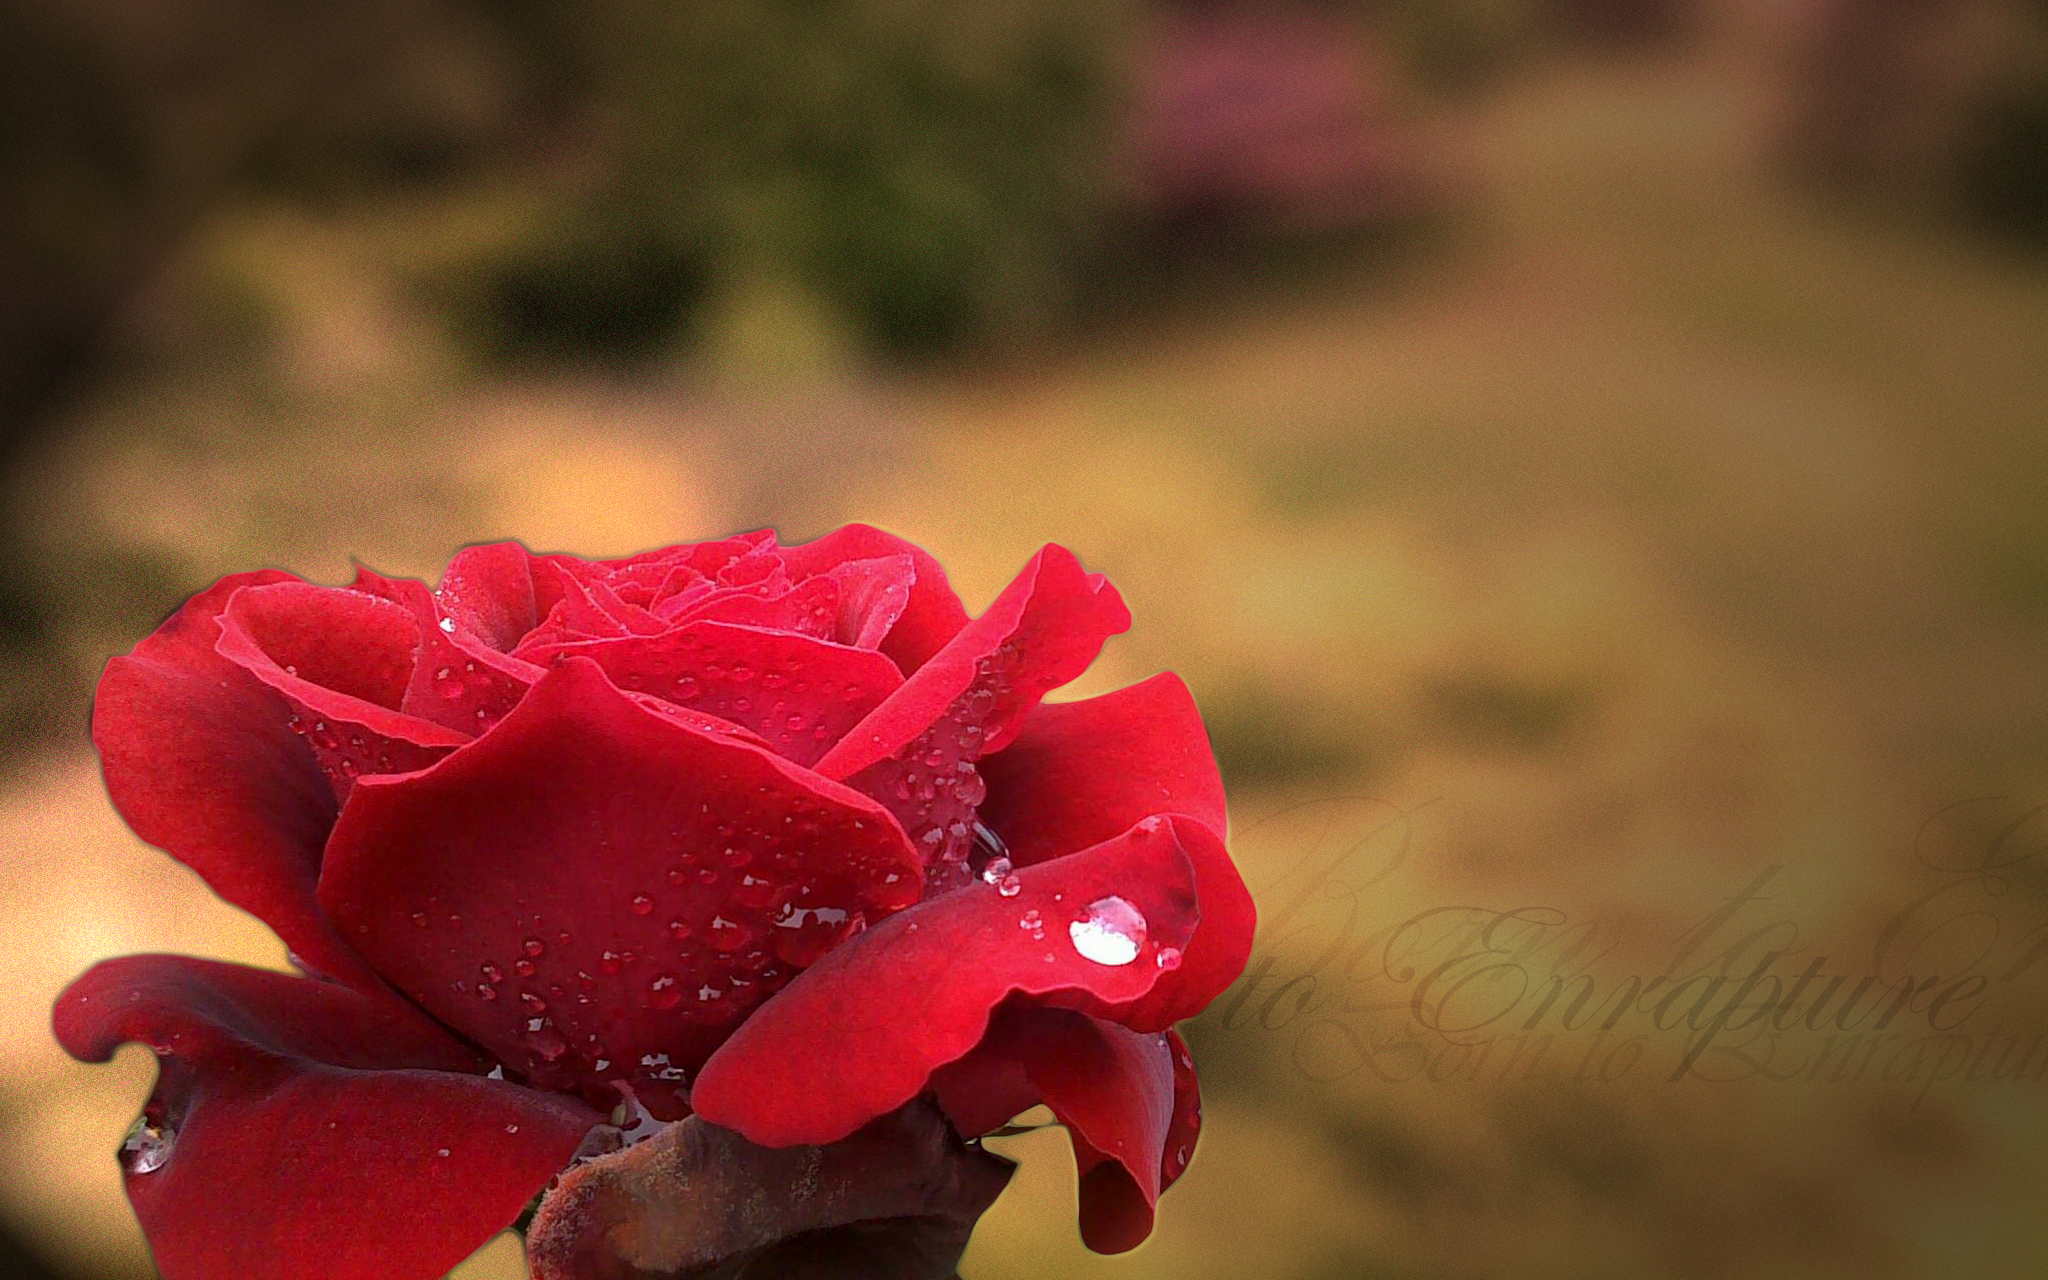 Descarga gratuita de fondo de pantalla para móvil de Flores, Flor, Rosa, Tierra/naturaleza.